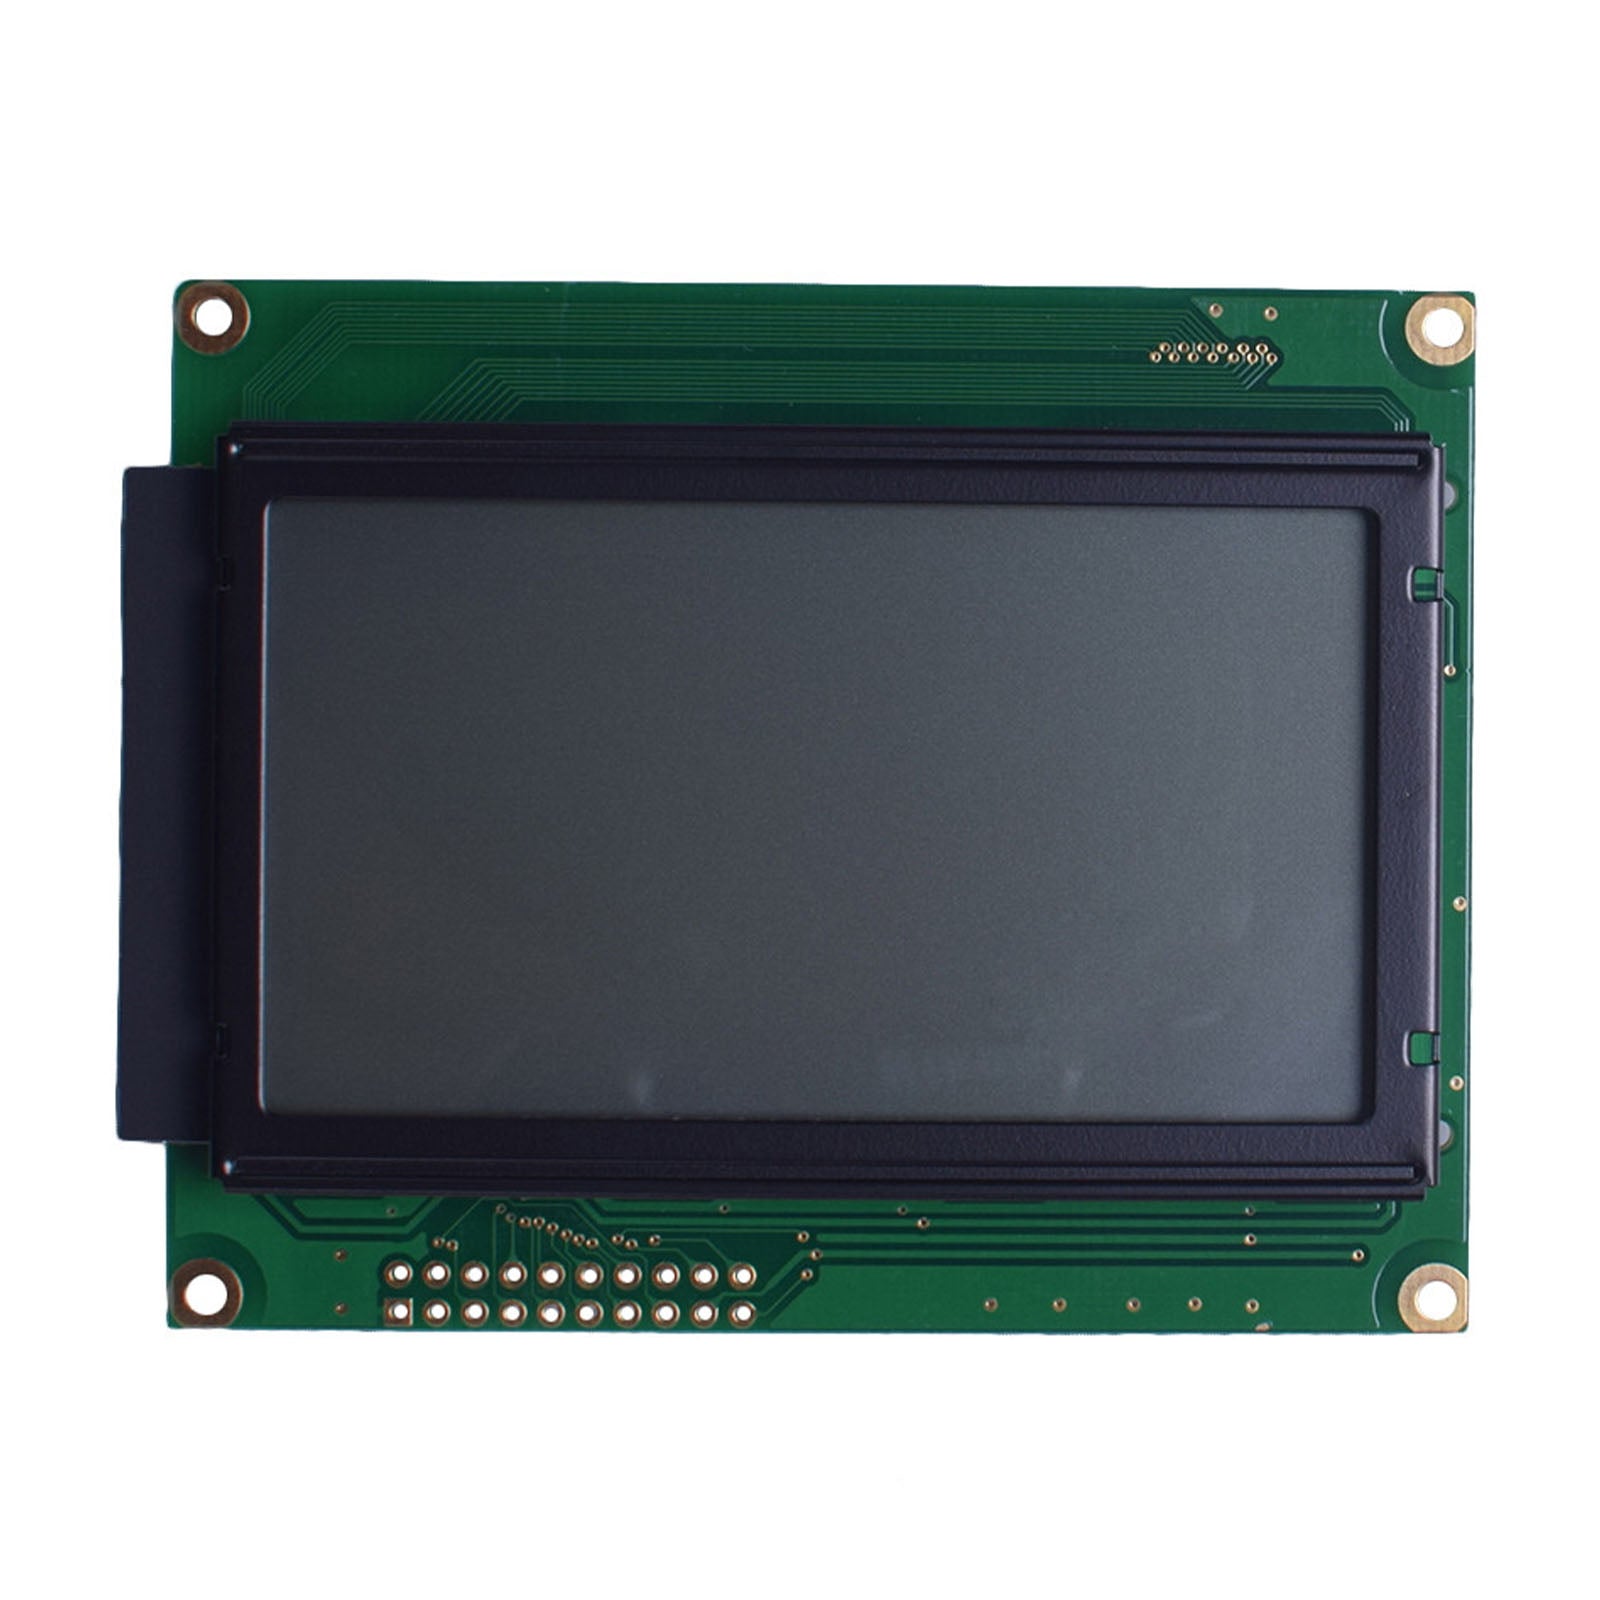 DisplayModule 3.24" 128x64 Graphic LCD - MCU